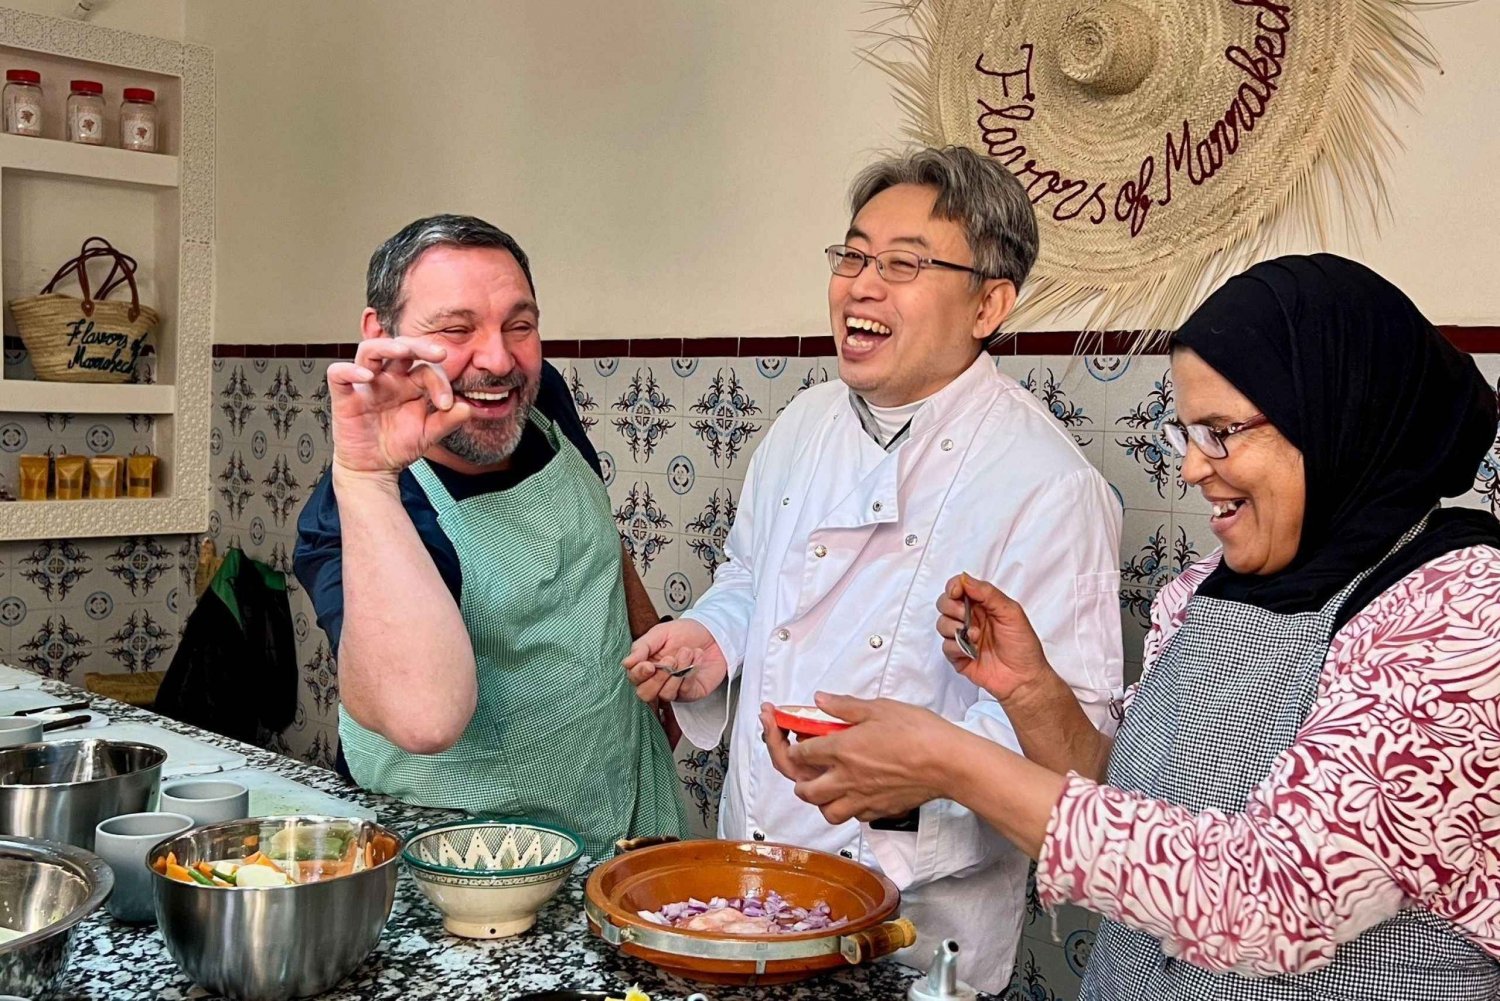 Marrakech - matlagningskurs Marockansk matlagningskurs med marknadsbesök och måltid